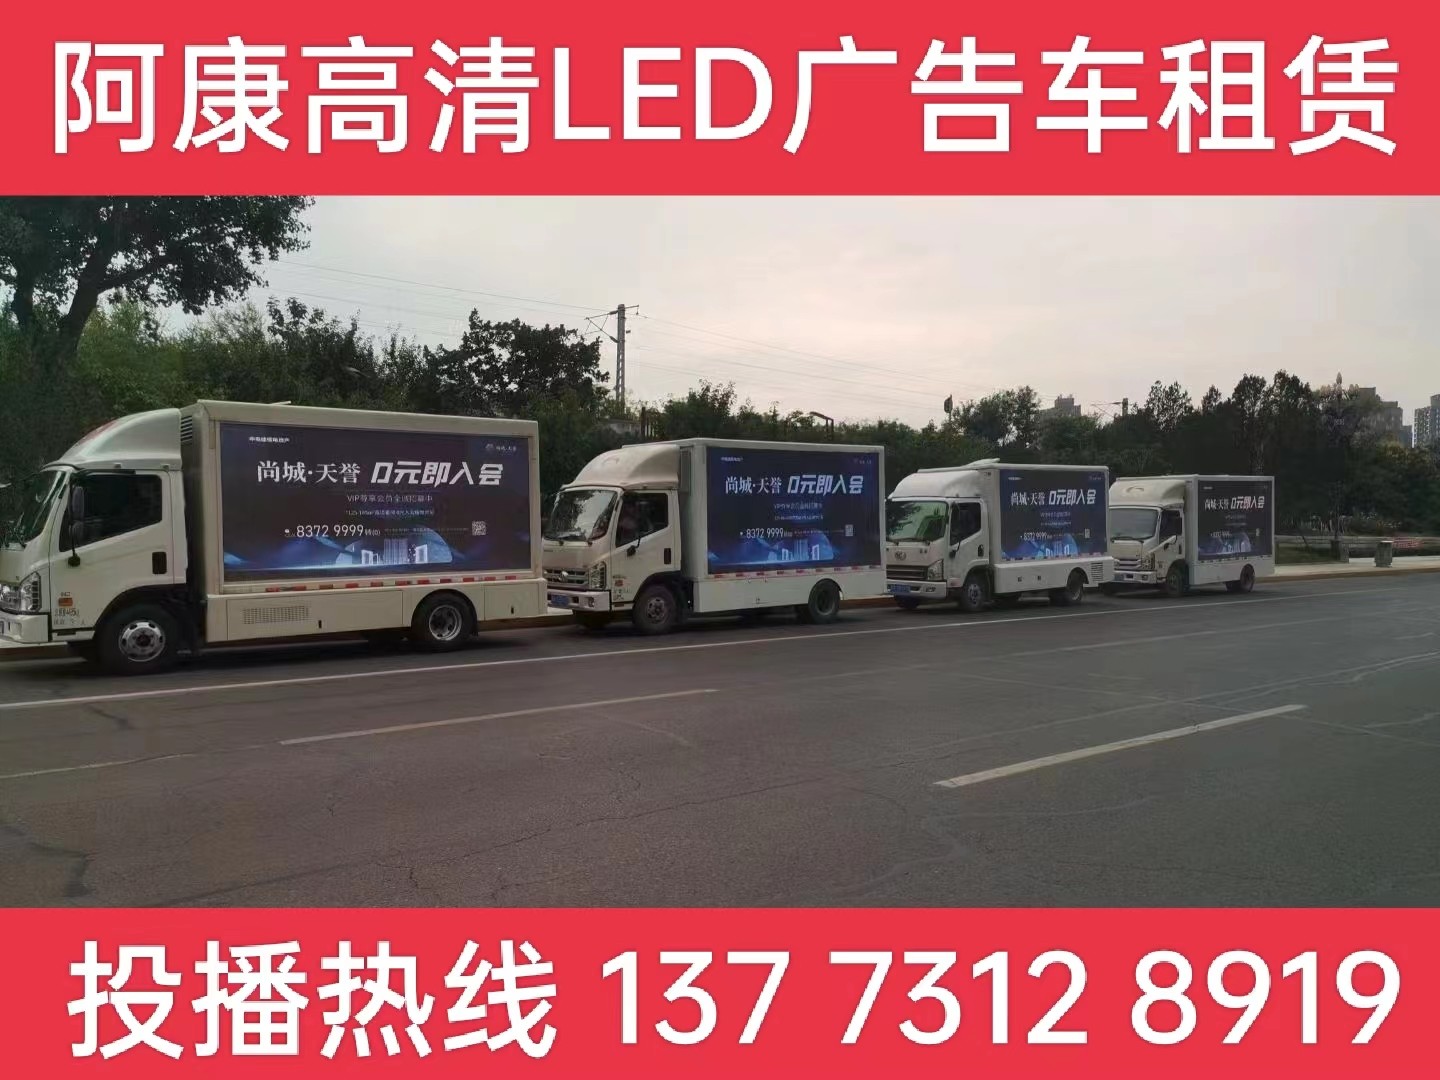 江阴LED广告车出租-某房产公司效果展示